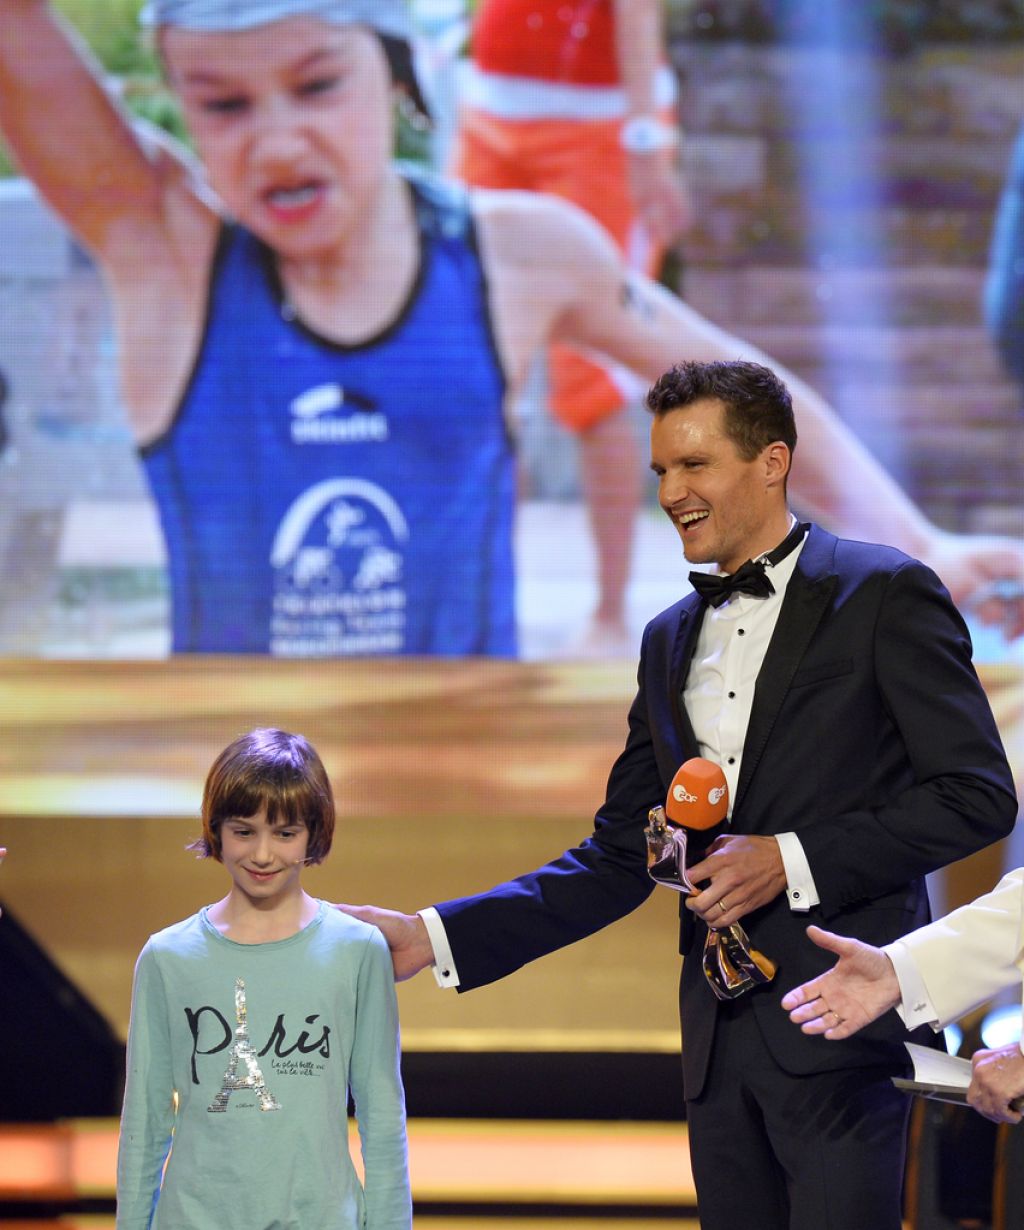 Športne nagrade: Frodeno najboljši v Nemčiji, BBC nagradil Murrayja